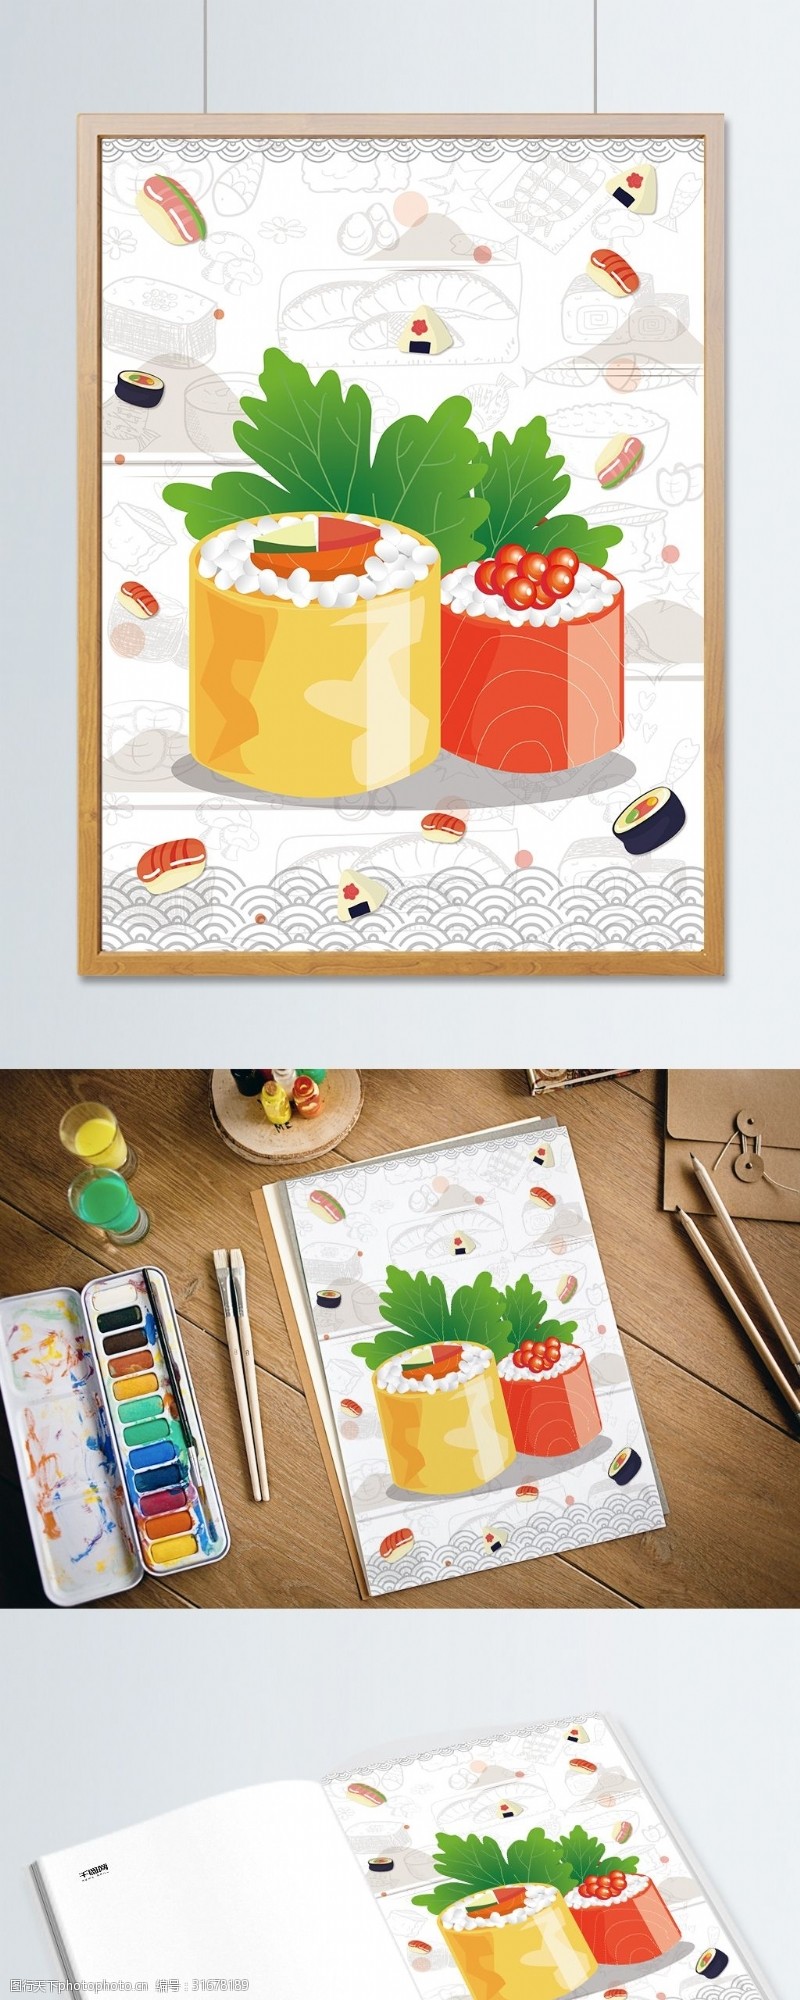 创意手绘寿司美食寿司日式料理插画